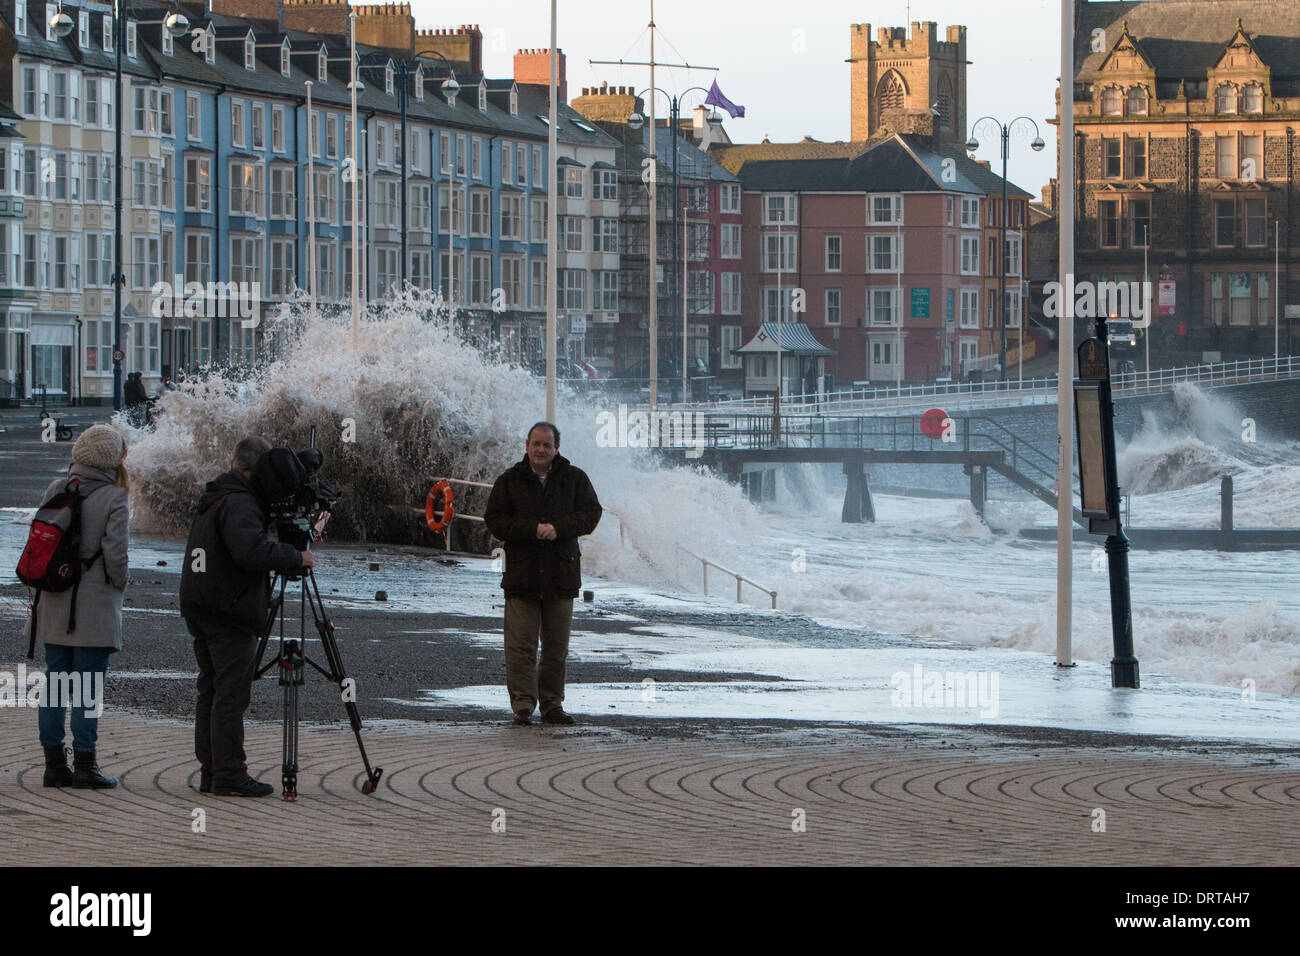 Aberystwyth, Pays de Galles, Royaume-Uni. 06Th Feb 2014. Les équipes de télévision News descendre sur l'Aberystwyth tempête approche. Crédit : Jon Freeman/Alamy Live News Banque D'Images